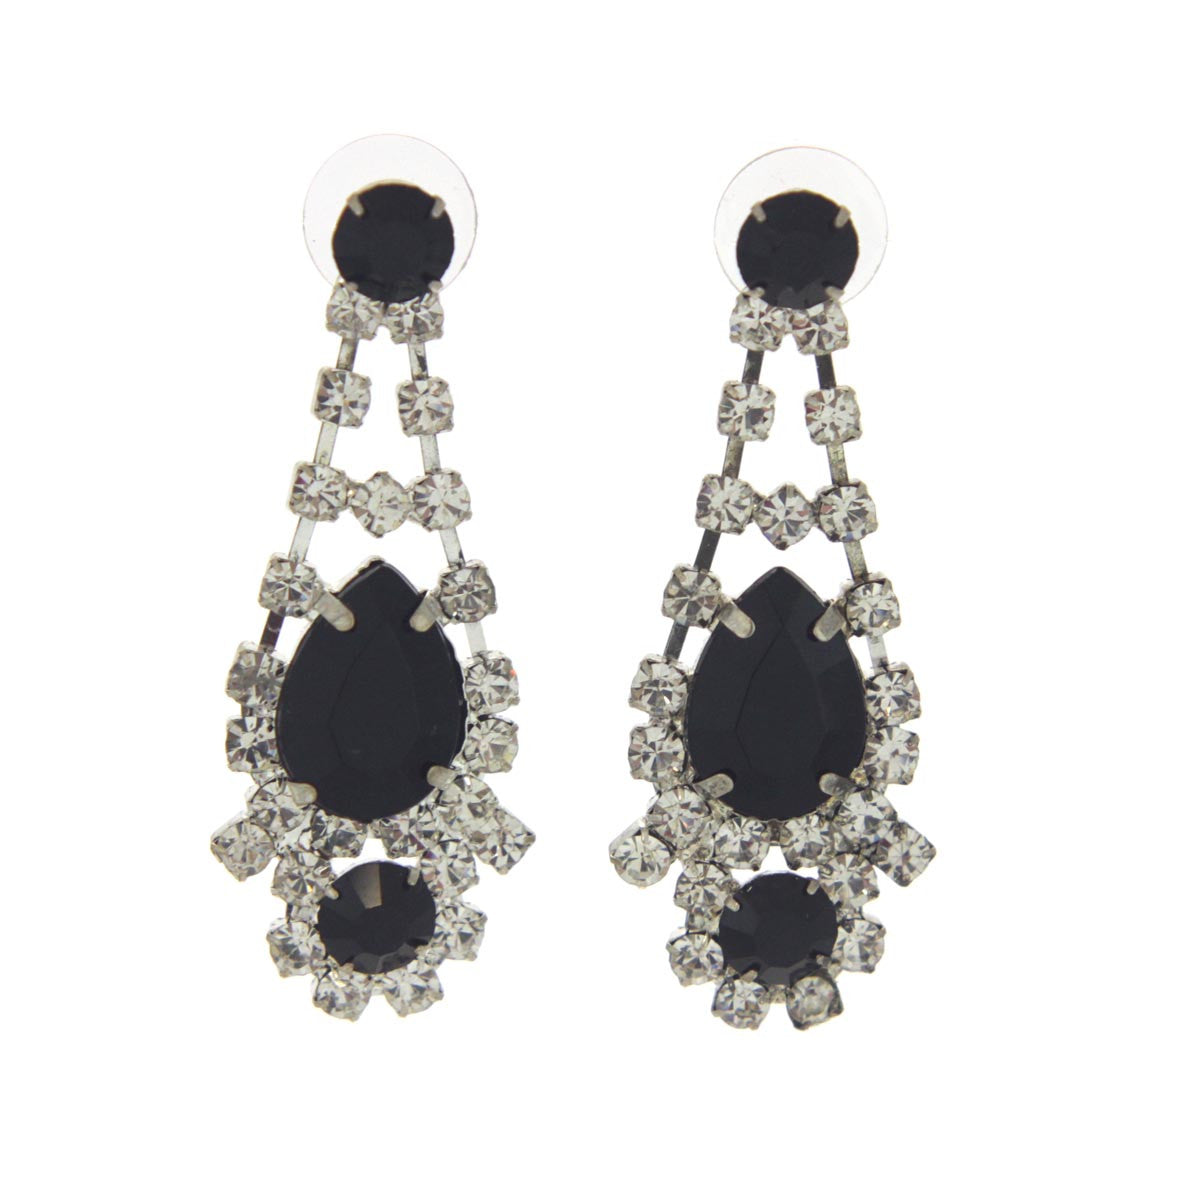 Austrian Crystal Black Pearl Earrings